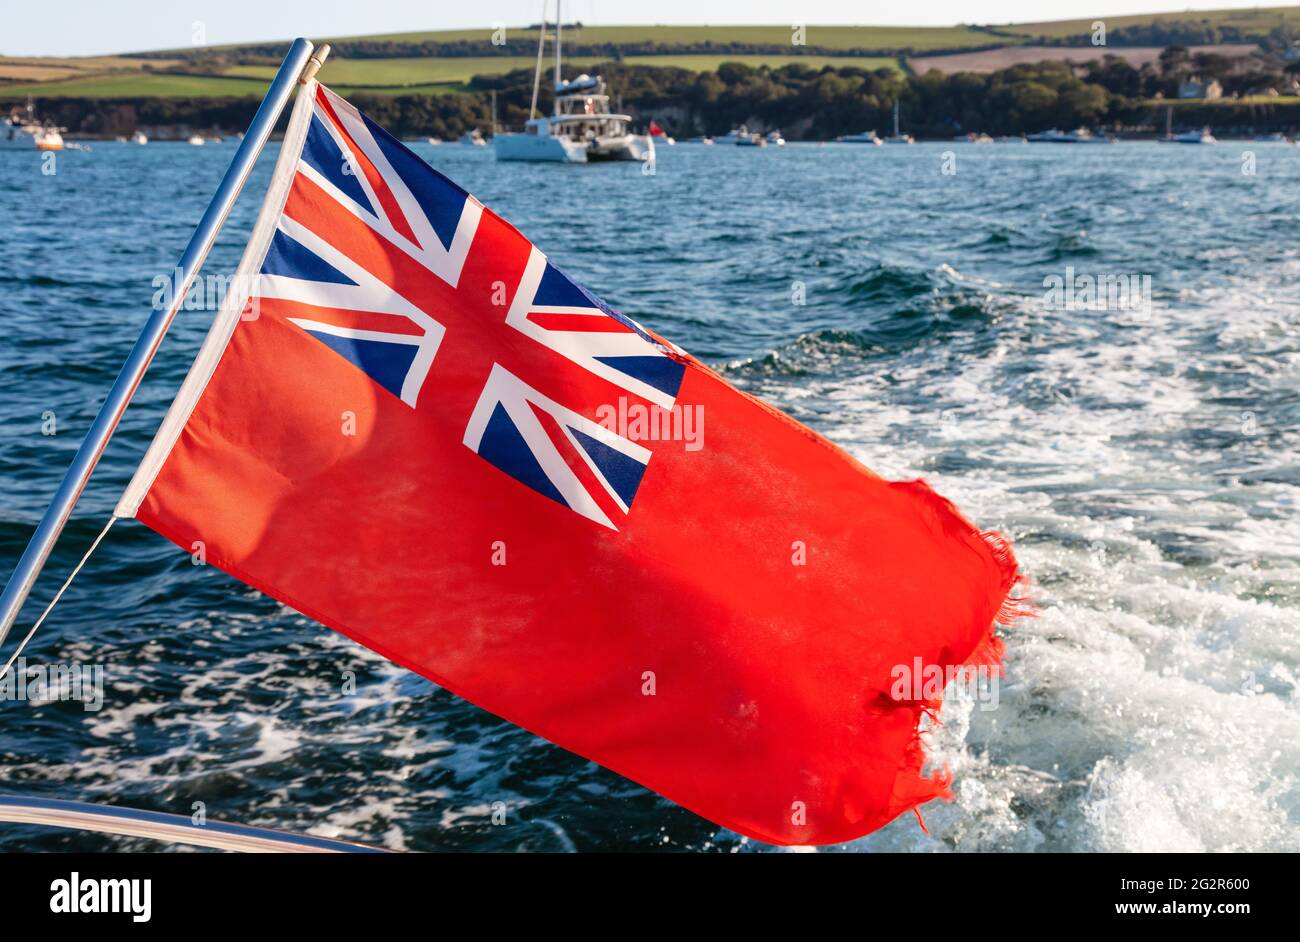 Vært for knap civilisation British red ensign flag flying hi-res stock photography and images - Alamy